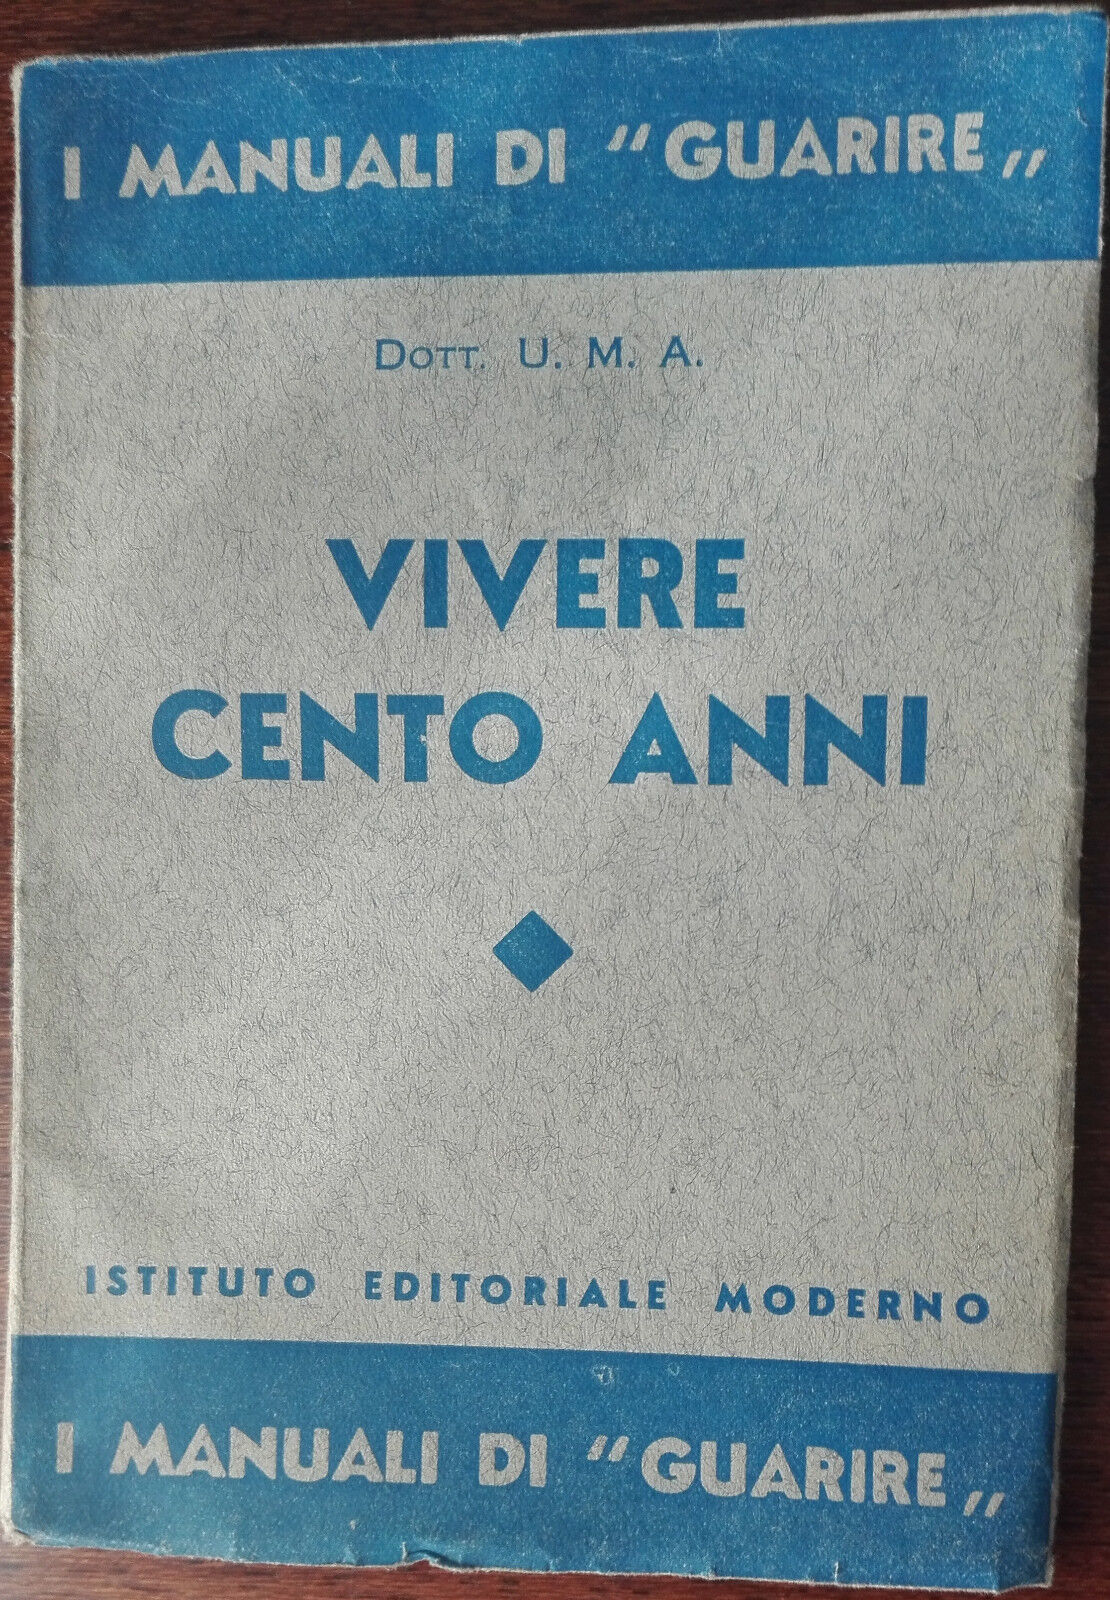 Vivere cento anni - Dott. U. M. A. - Istituto editoriale moderno,1936 - A